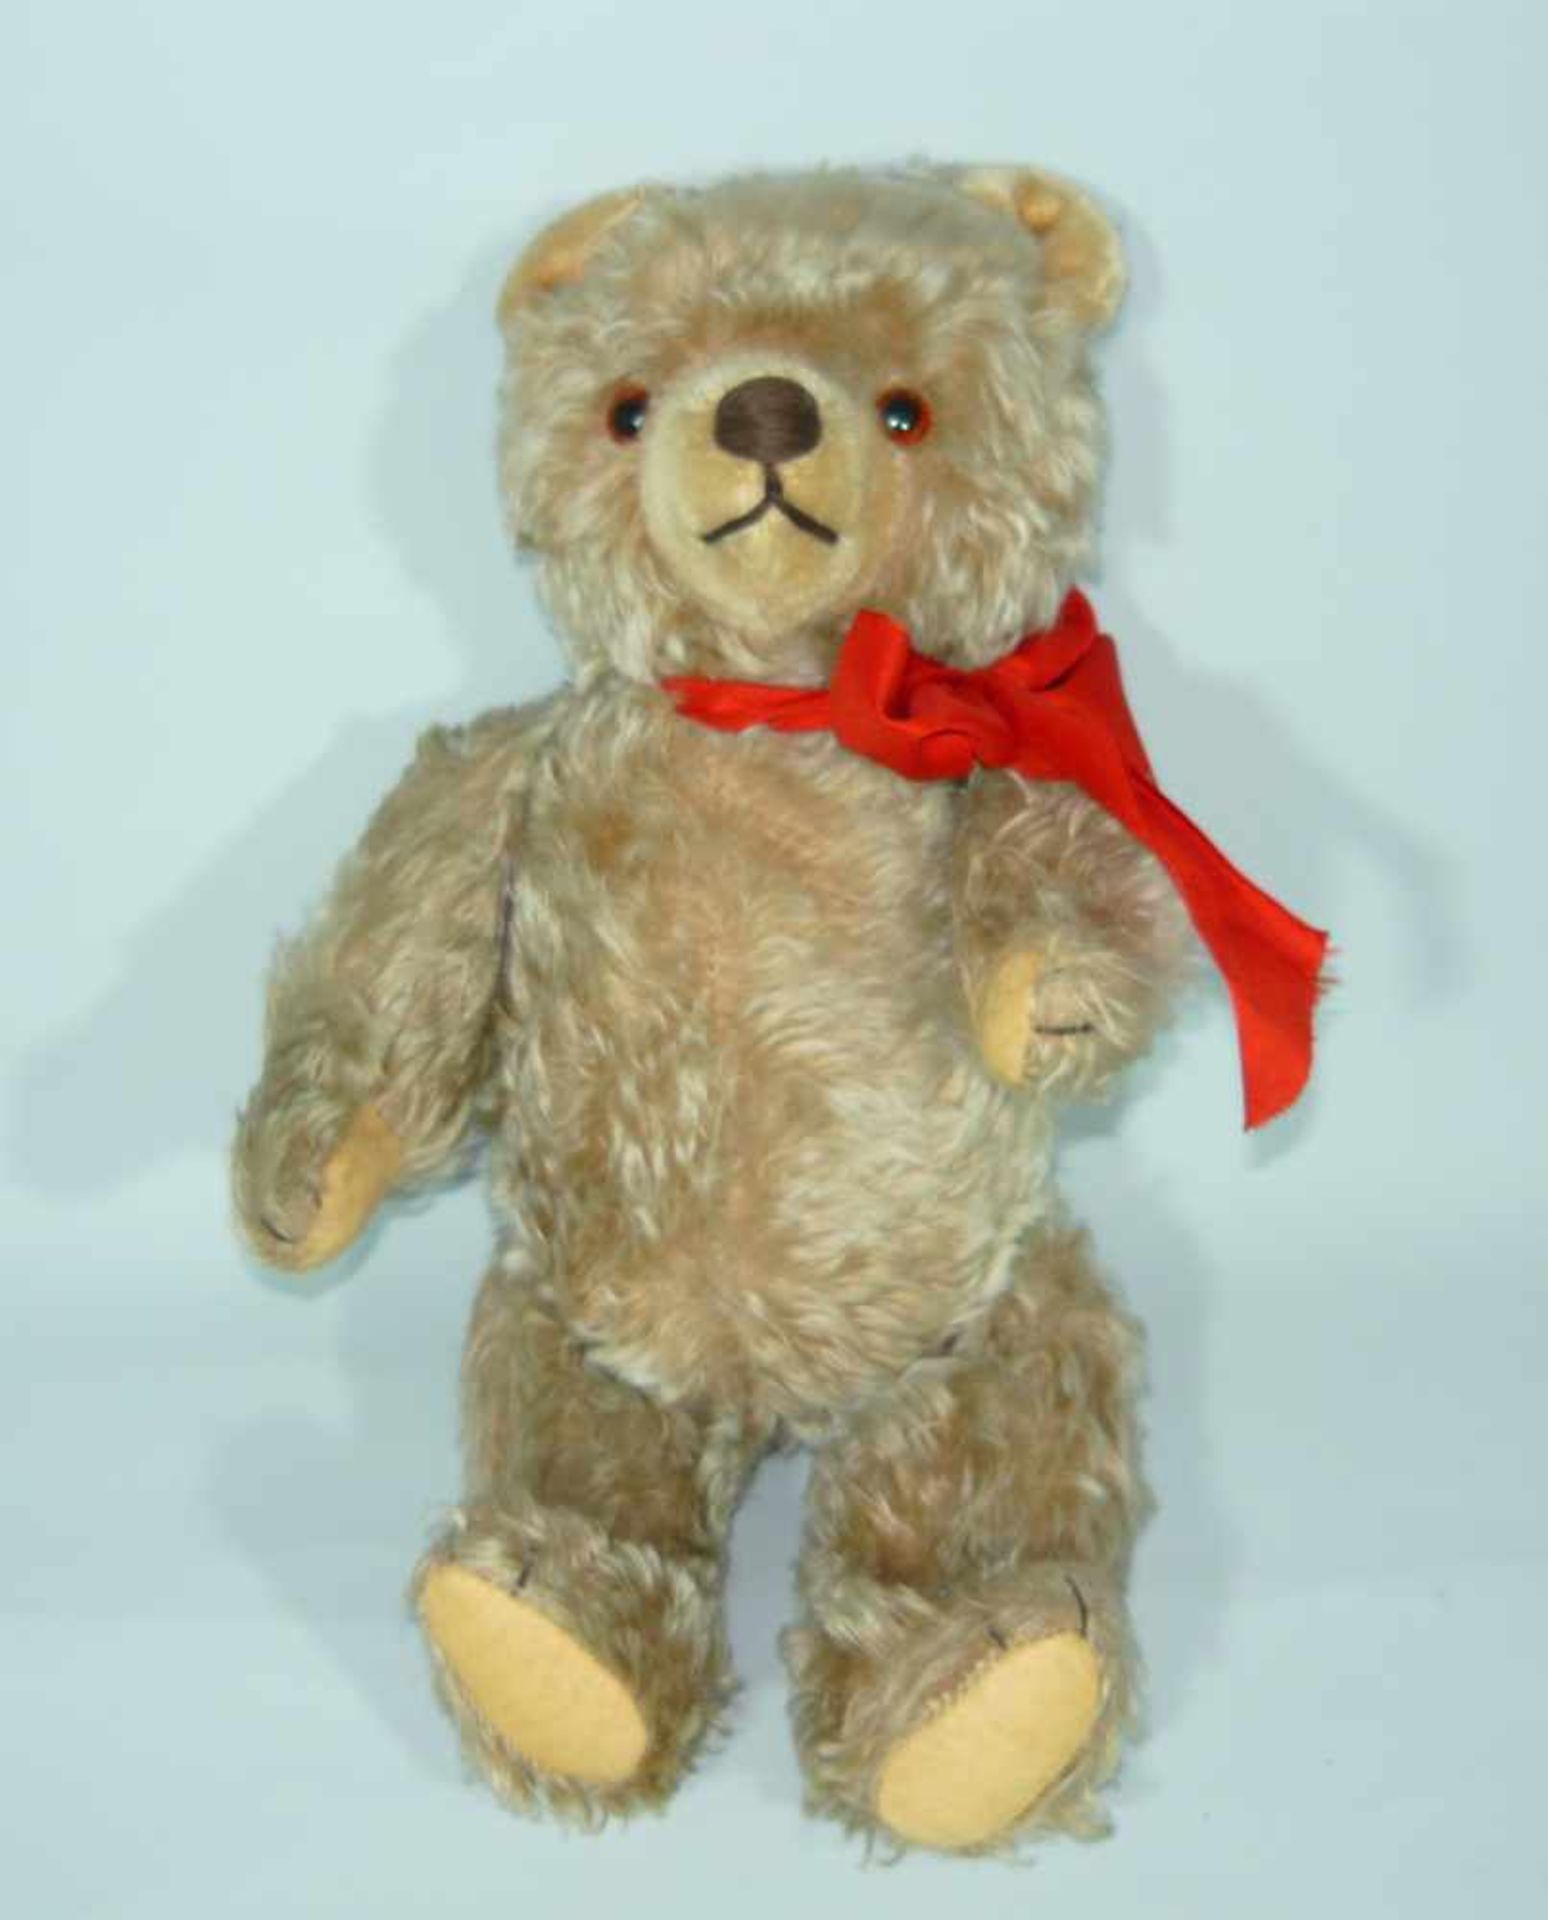 Schöner Teddybär mit Schleife. Unbekannte Marke. Wohl um 1950. Bei Bewegung gibt er Geräusche von